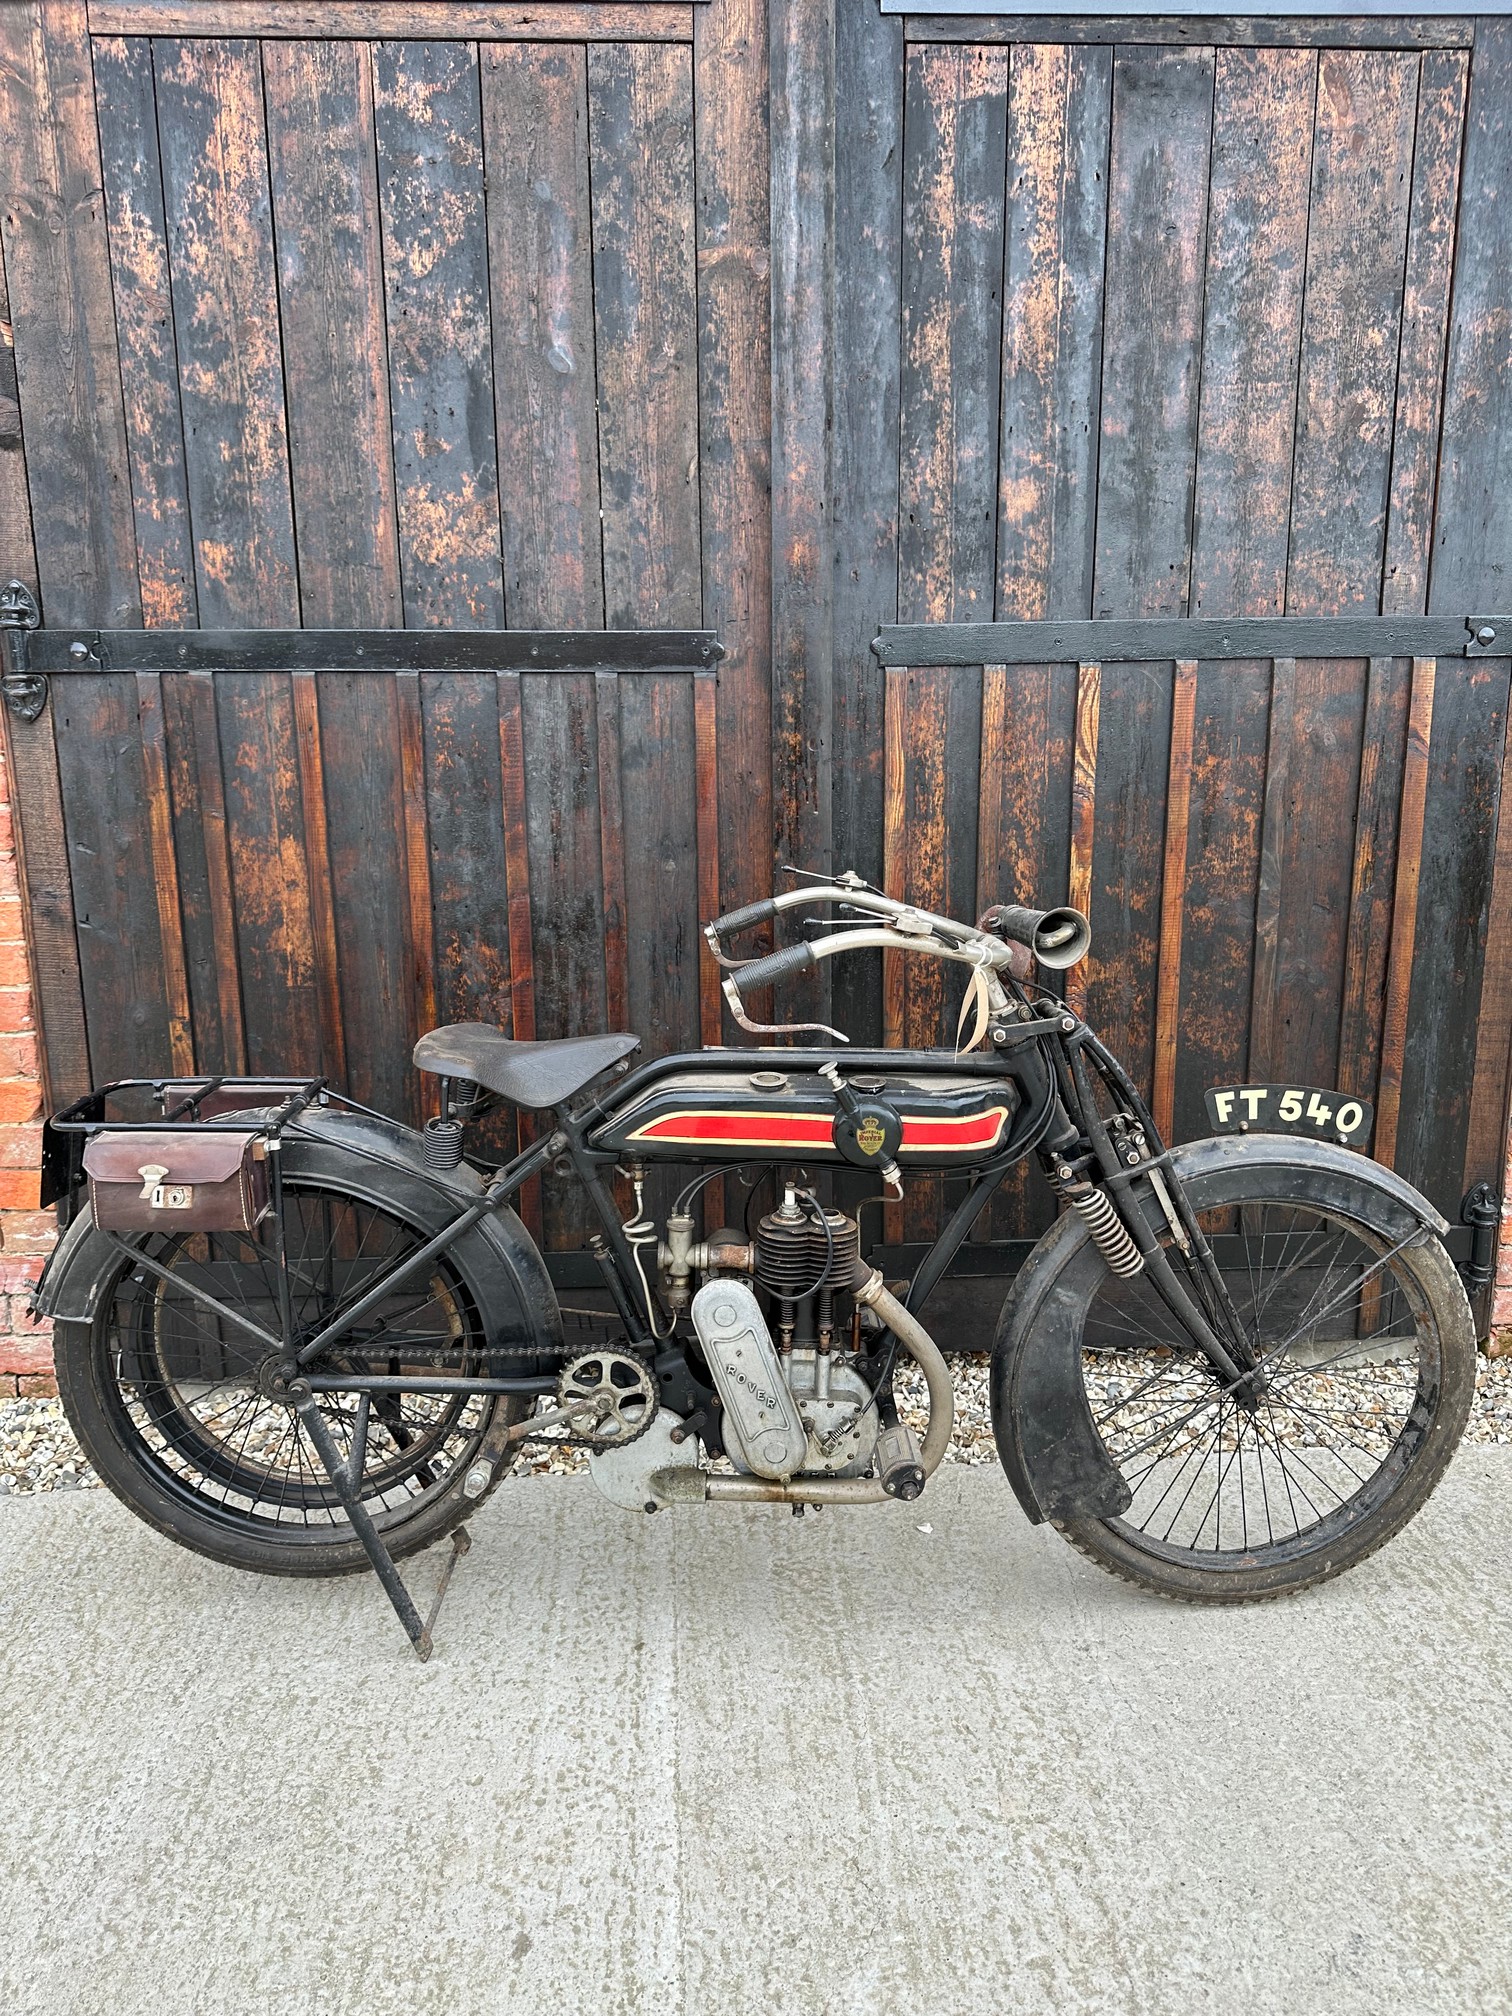 Circa 1912/13 ROVER 499cc 3 1/2HP - Image 2 of 9